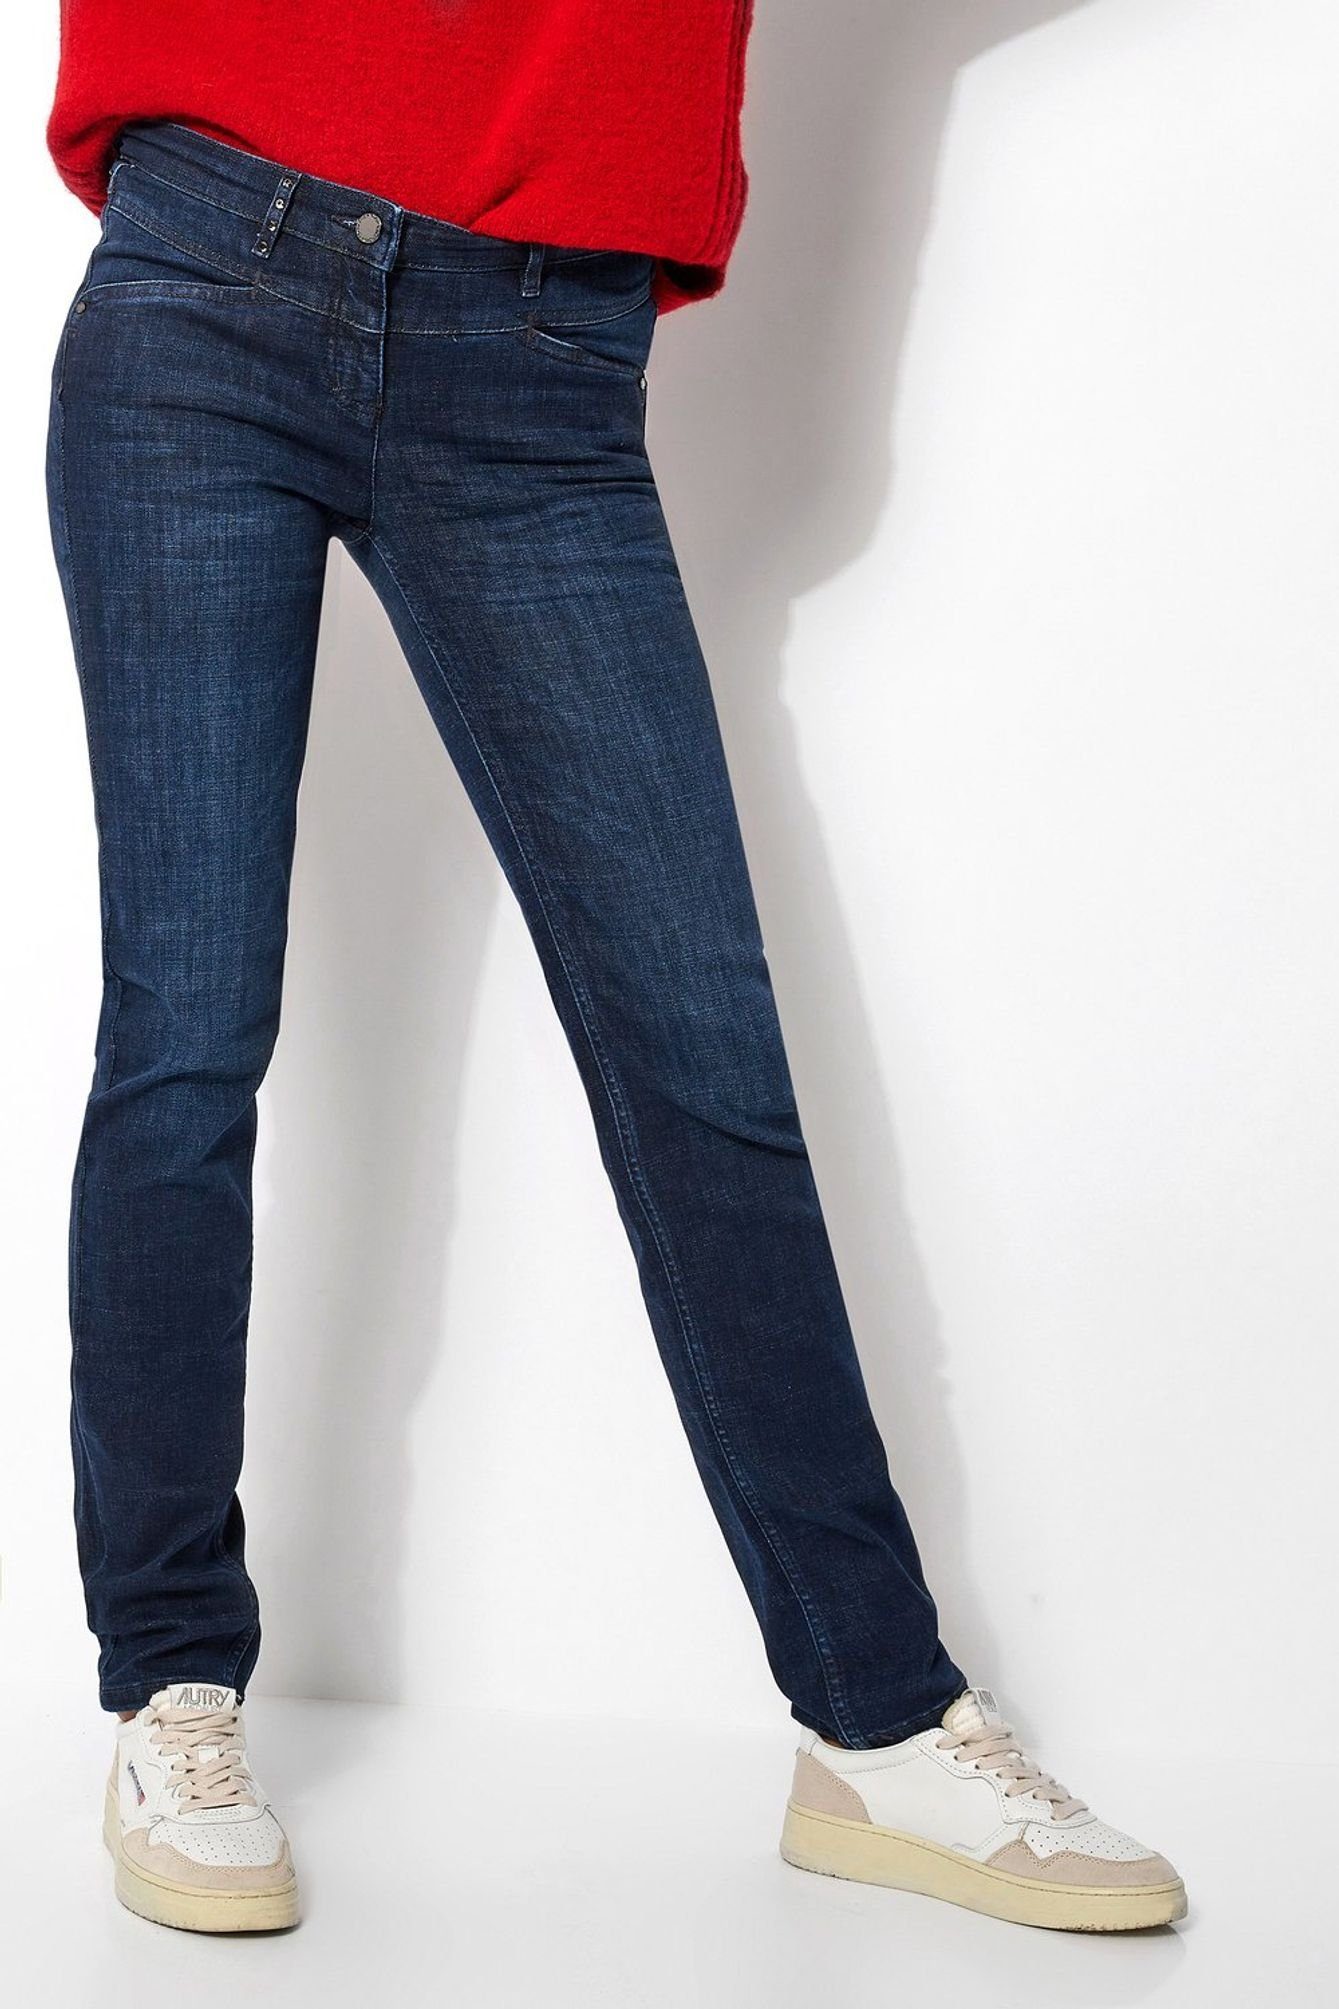 TONI 5-Pocket-Jeans 11-01 1106-17 5-Pocket-Design (574) used blue